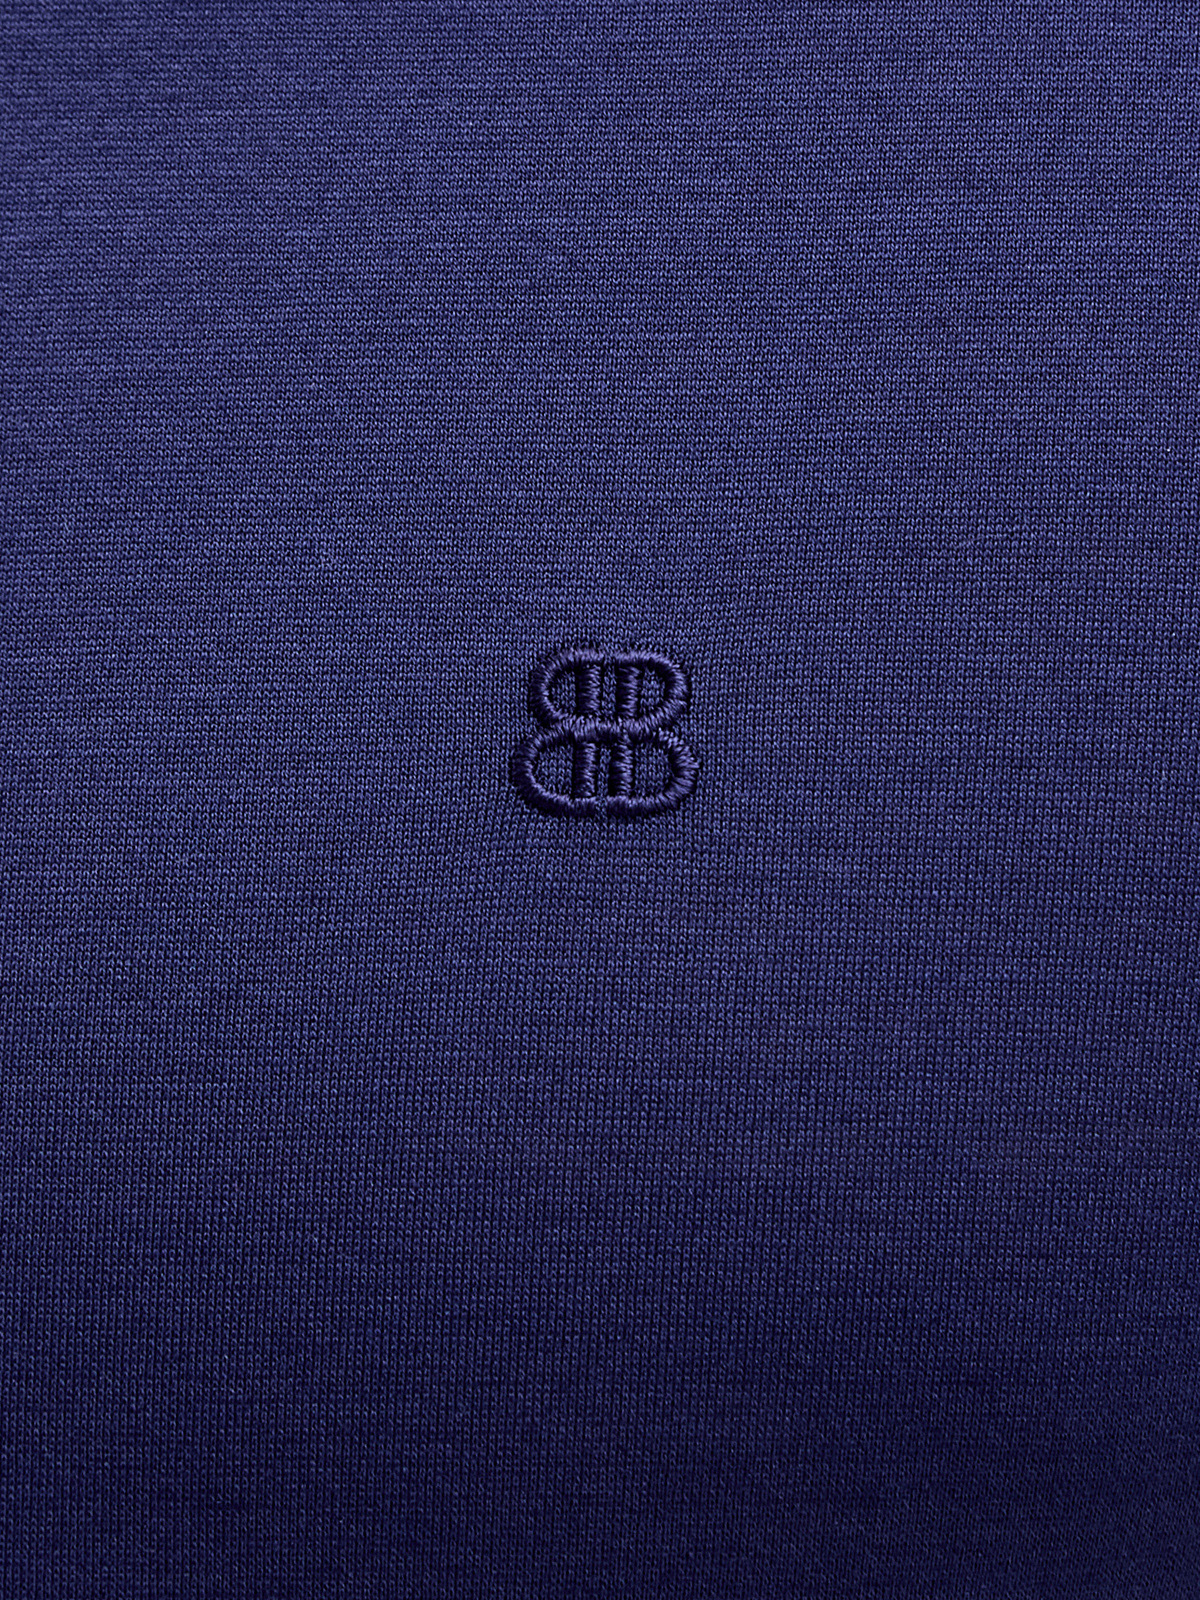 Футболка из гладкого хлопка джерси с вышитым логотипом BERTOLO, цвет синий, размер 50;52;54;56;58;60;62;64 - фото 5